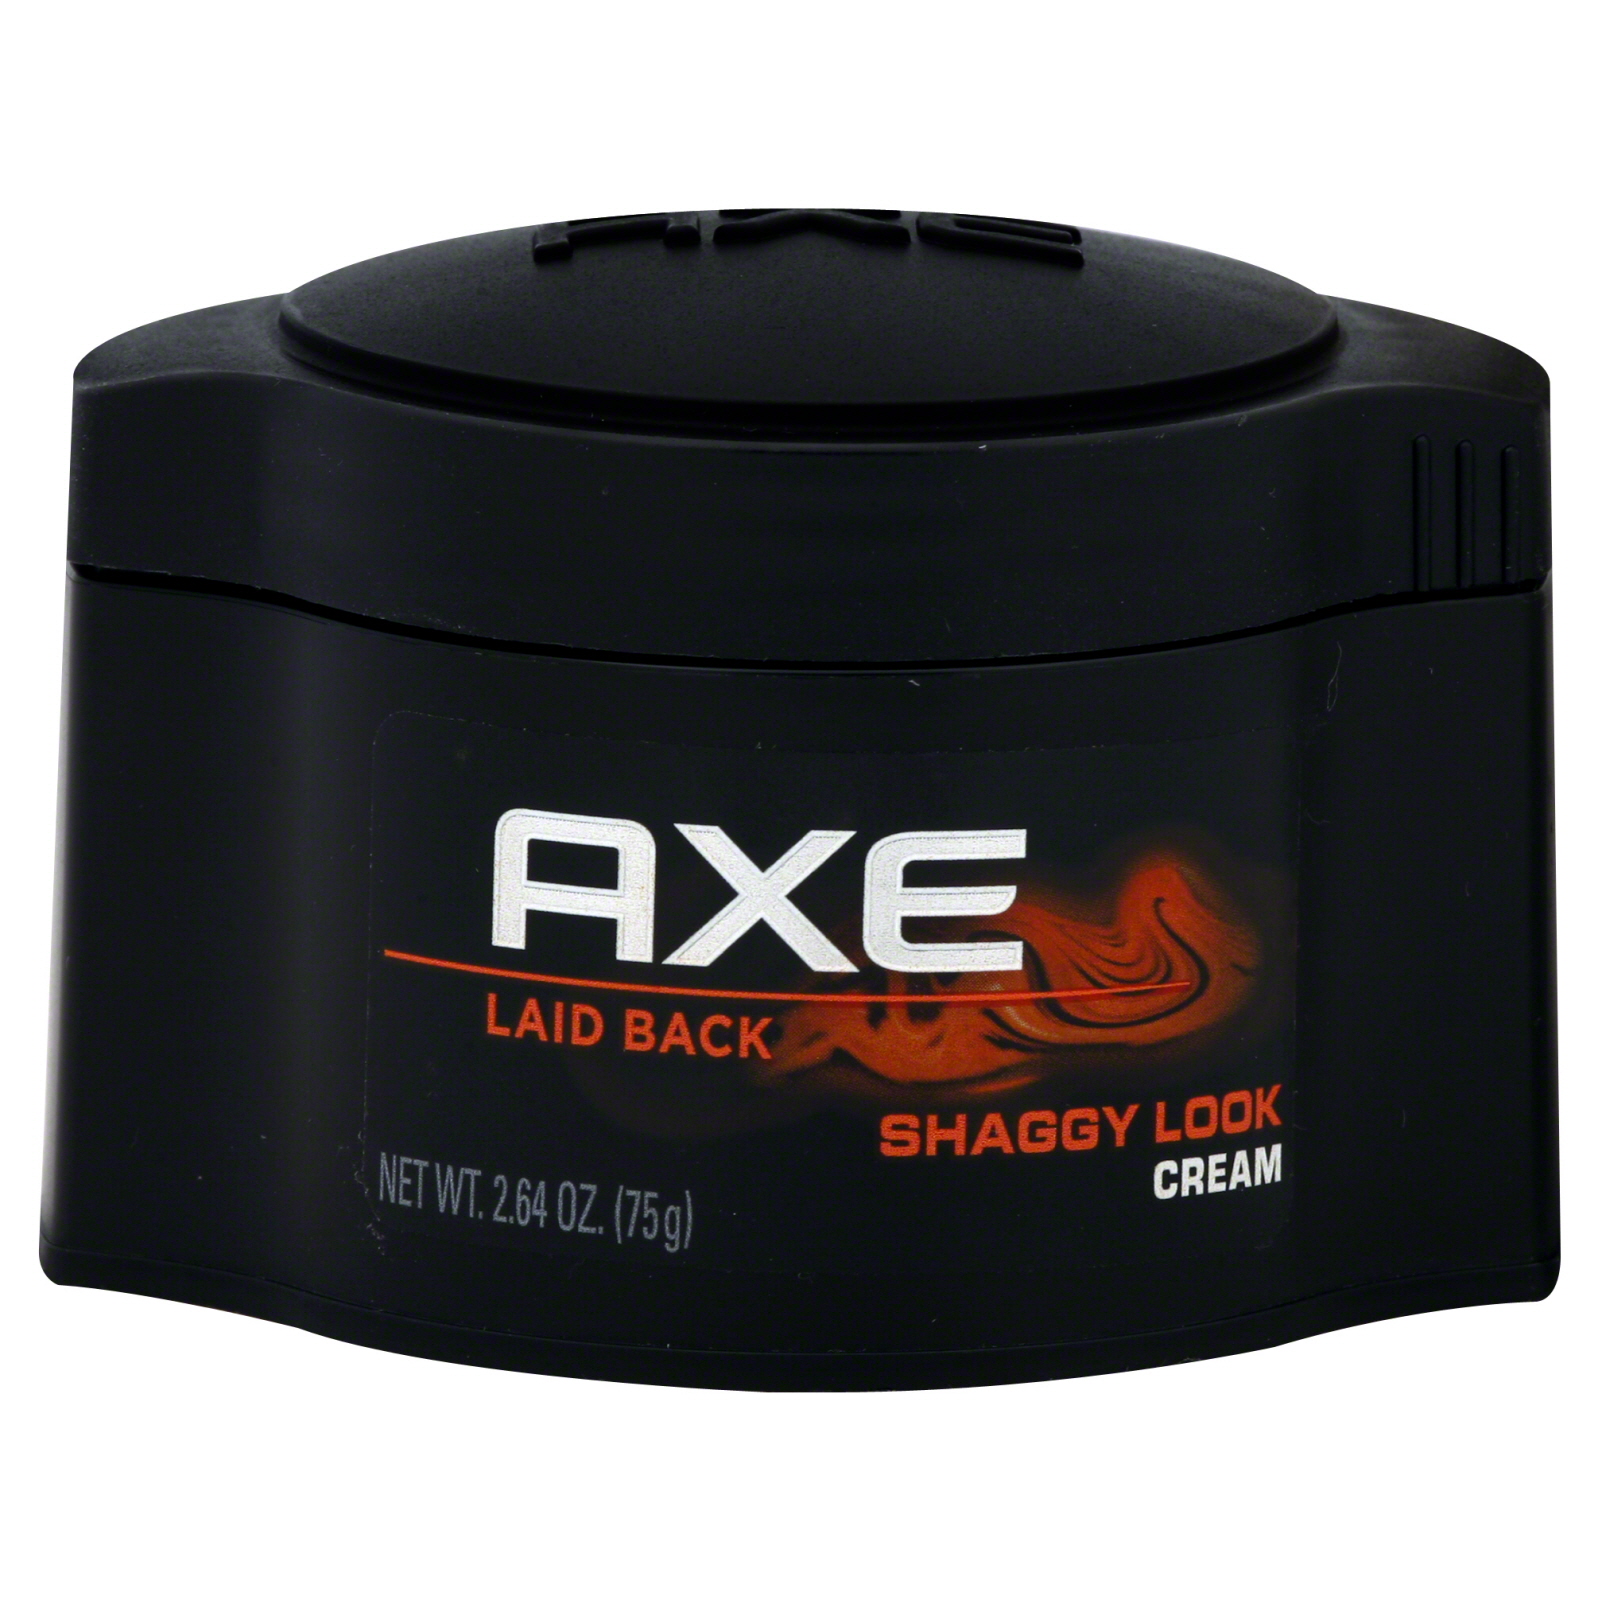 AXE Shaggy Look Cream, Laid Back, 2.64 oz (75 g)